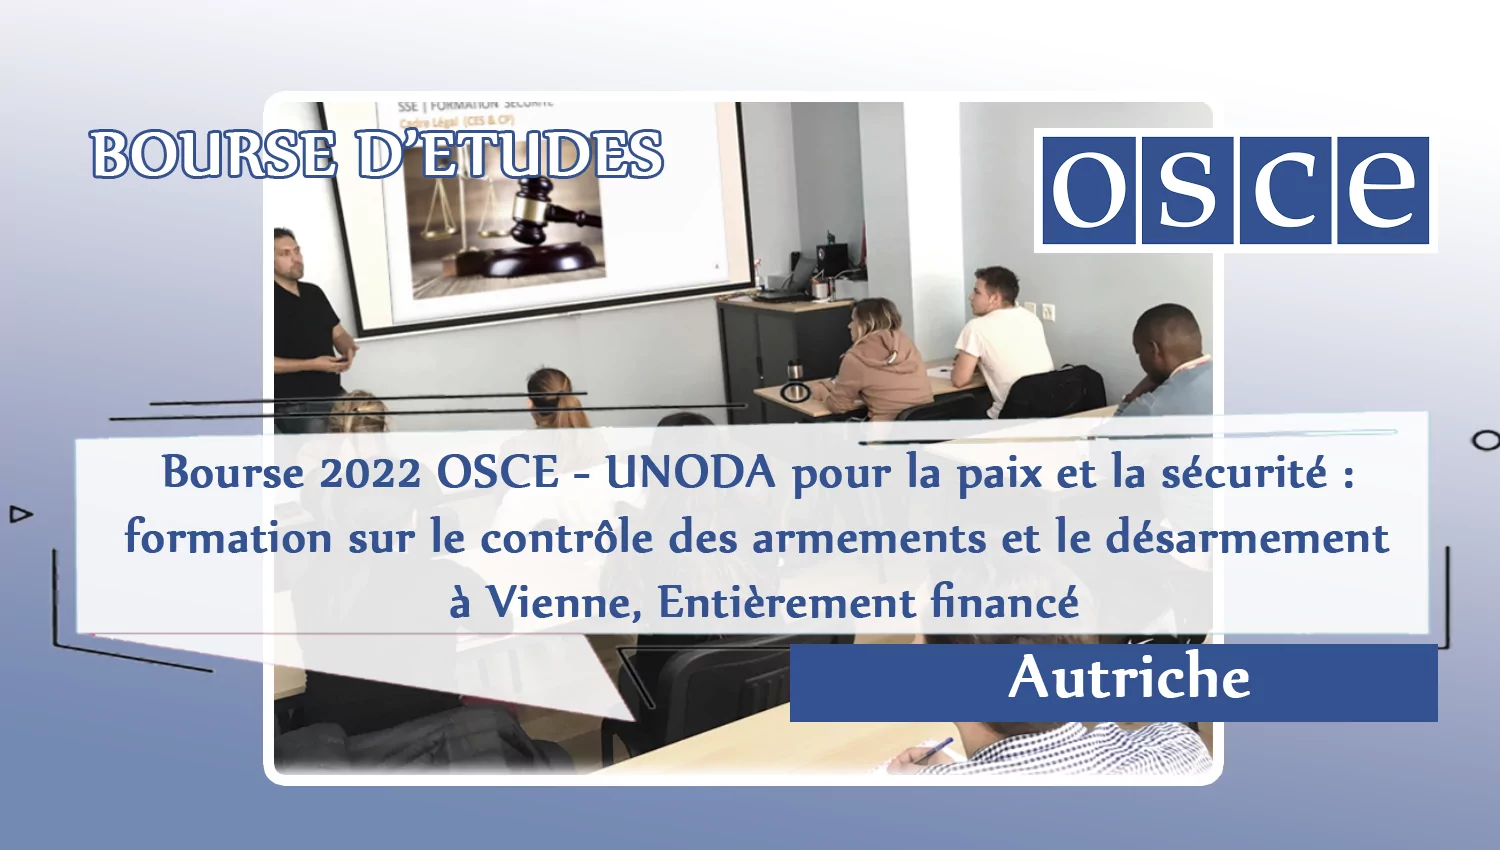 Bourse 2022 OSCE – UNODA pour la paix et la sécurité : formation sur le contrôle des armements et le désarmement à Vienne, Entièrement financé, Autriche